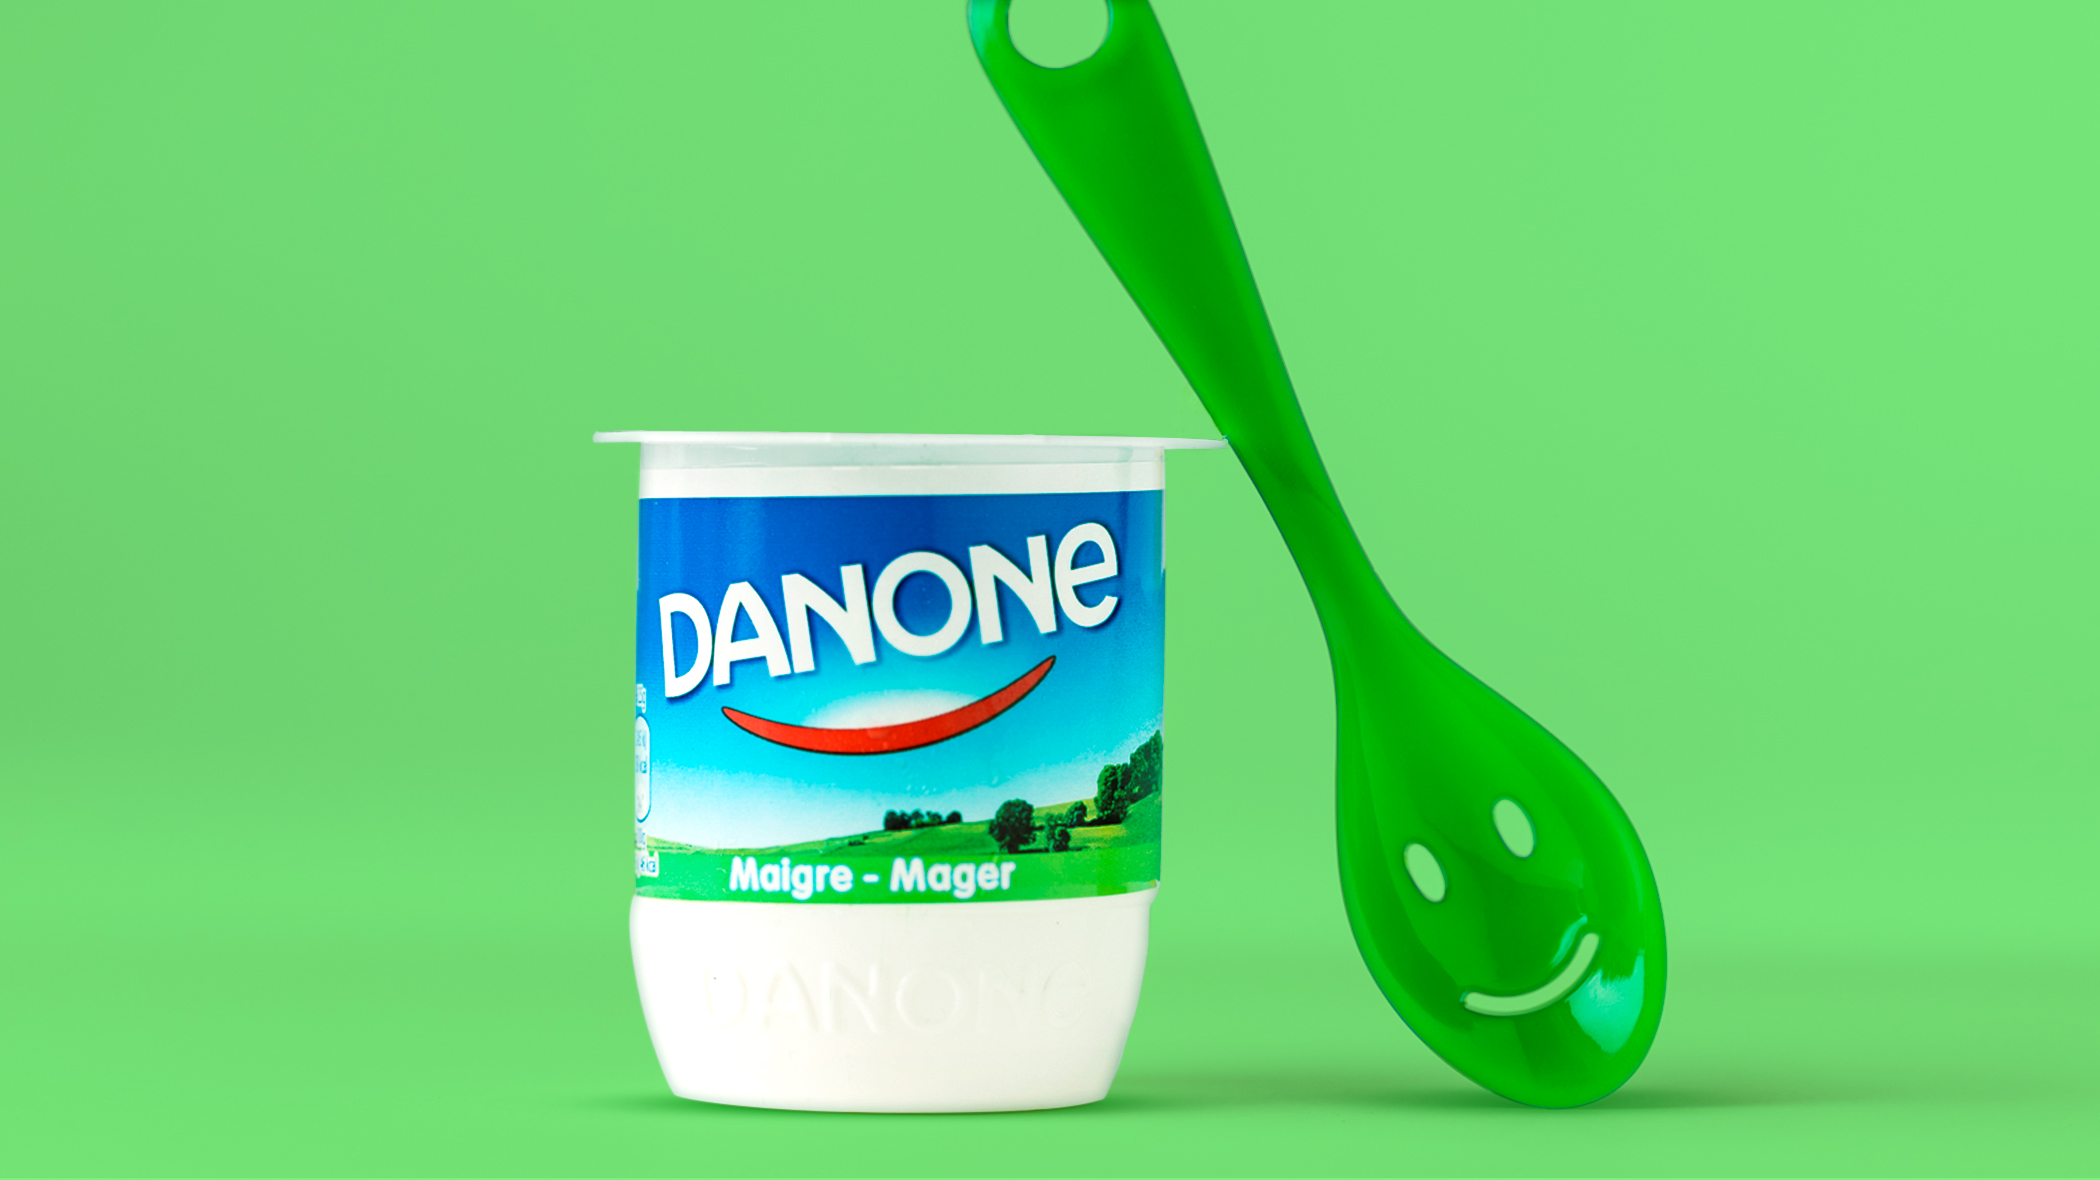 Danone The Danone spoon